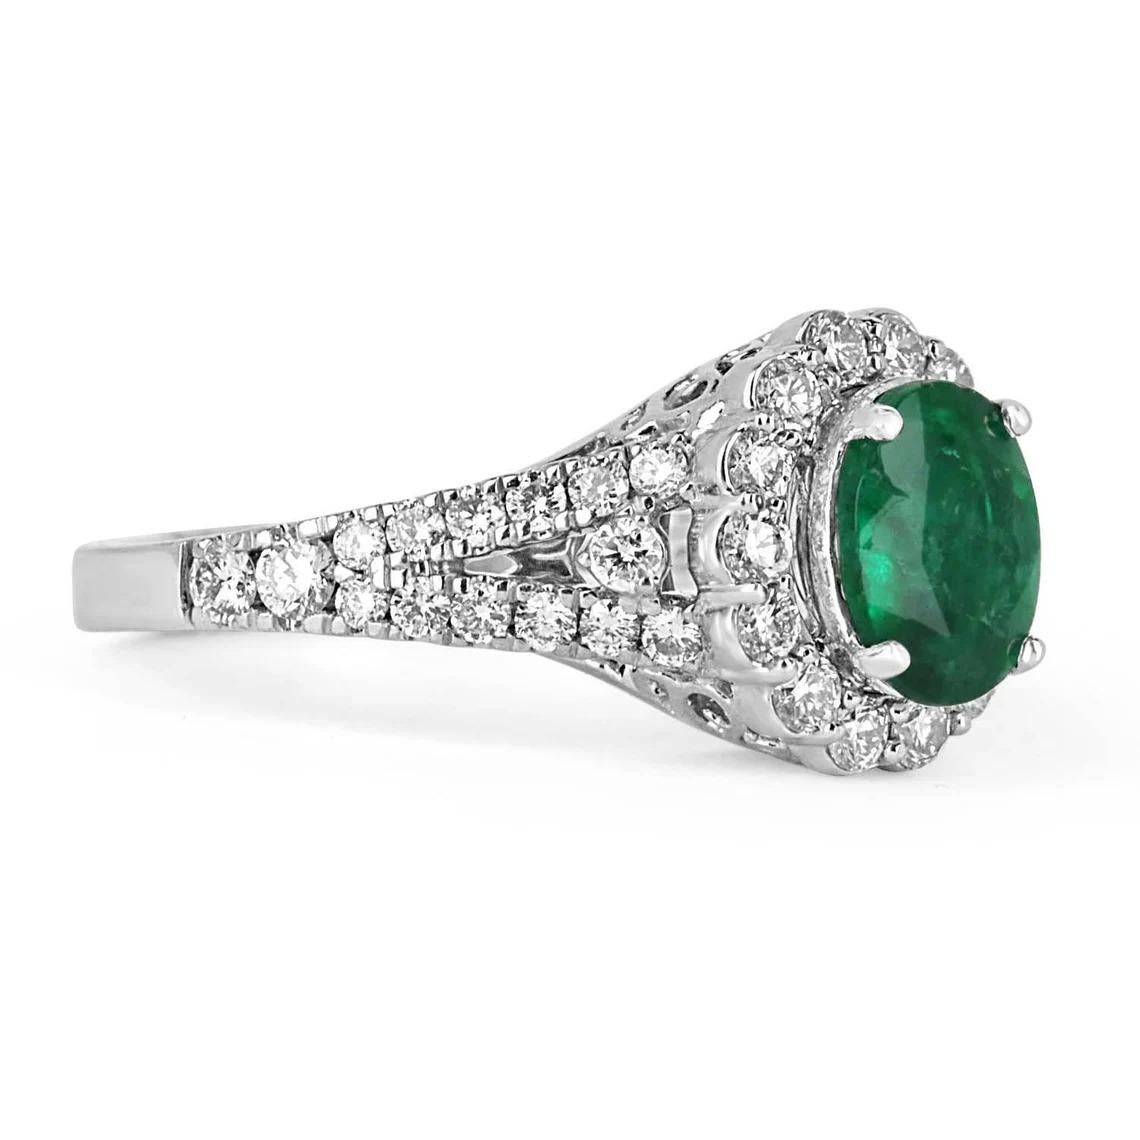 Ein exquisiter ovaler Verlobungsring mit Smaragd und Diamant für die rechte Hand. Die prächtige Fassung lässt einen echten, in der Erde abgebauten, natürlichen Smaragd mit schöner Farbe und sehr guter Augenreinheit sitzen. Der Smaragd ist nicht